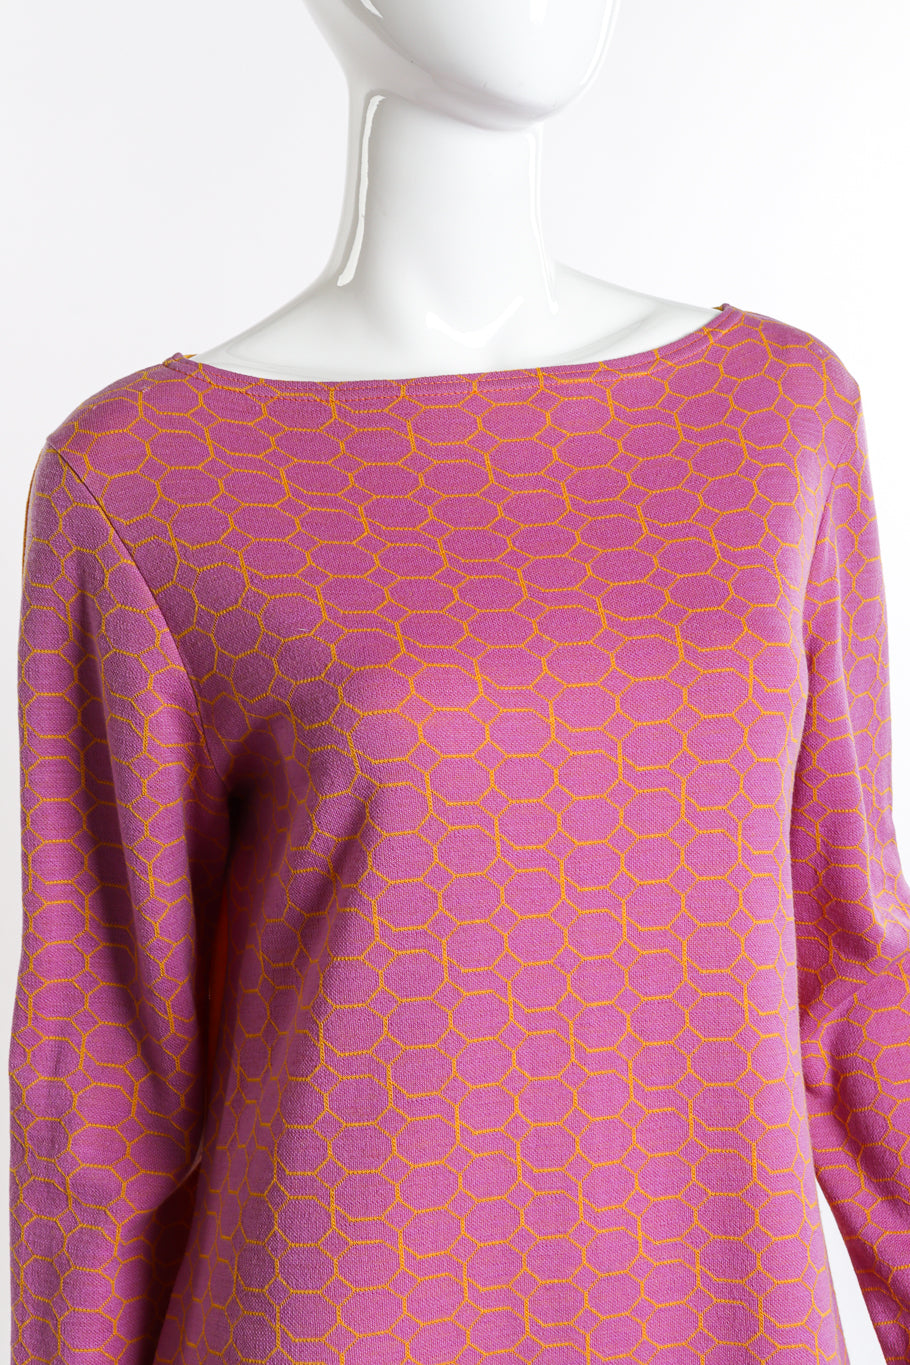 Vintage Rudi Gernreich Honeycomb Print Knit Dress front on mannequin closeup @recess la